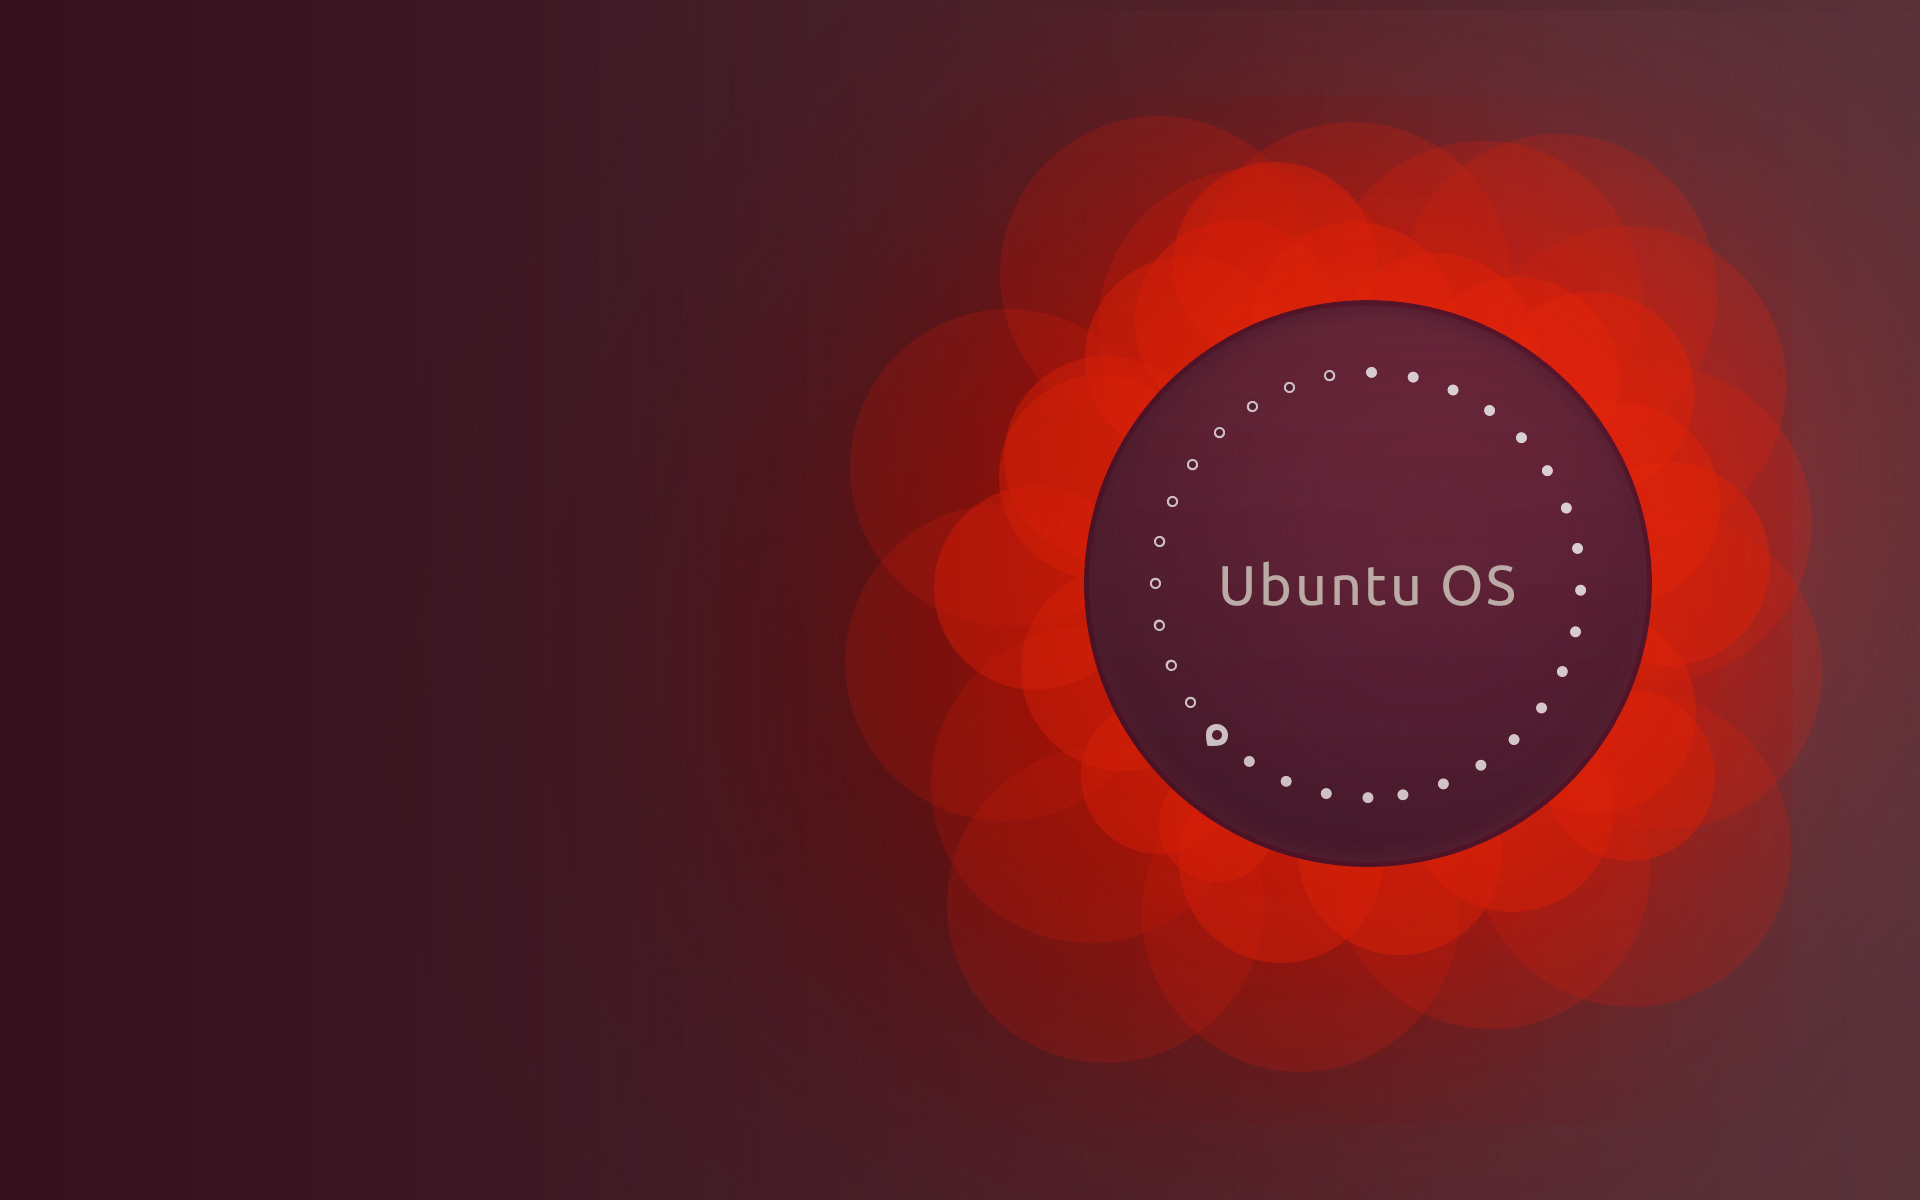 Chào mừng đến với bộ sưu tập hình nền Ubuntu Desktop Wallpaper download. Đây là nơi tuyệt vời để tìm kiếm hình nền máy tính đẹp mắt và phù hợp với phong cách của bạn. Hãy xem ngay ảnh liên quan để tải xuống những thiết kế tuyệt vời nhất!